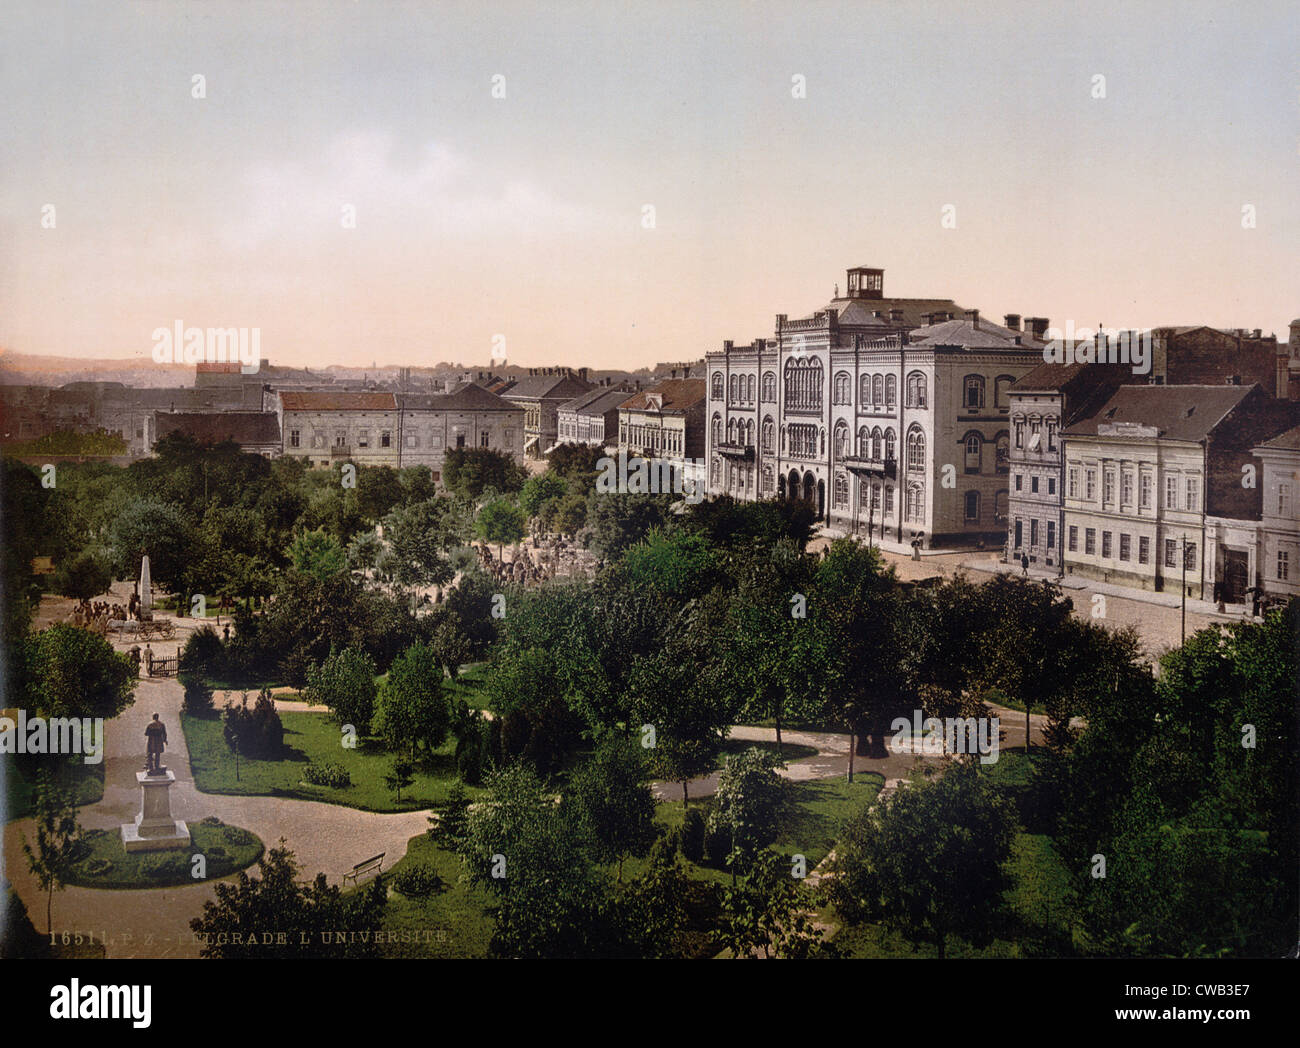 Serbia, University, Belgrade, photochrom, circa early 1900s. Stock Photo